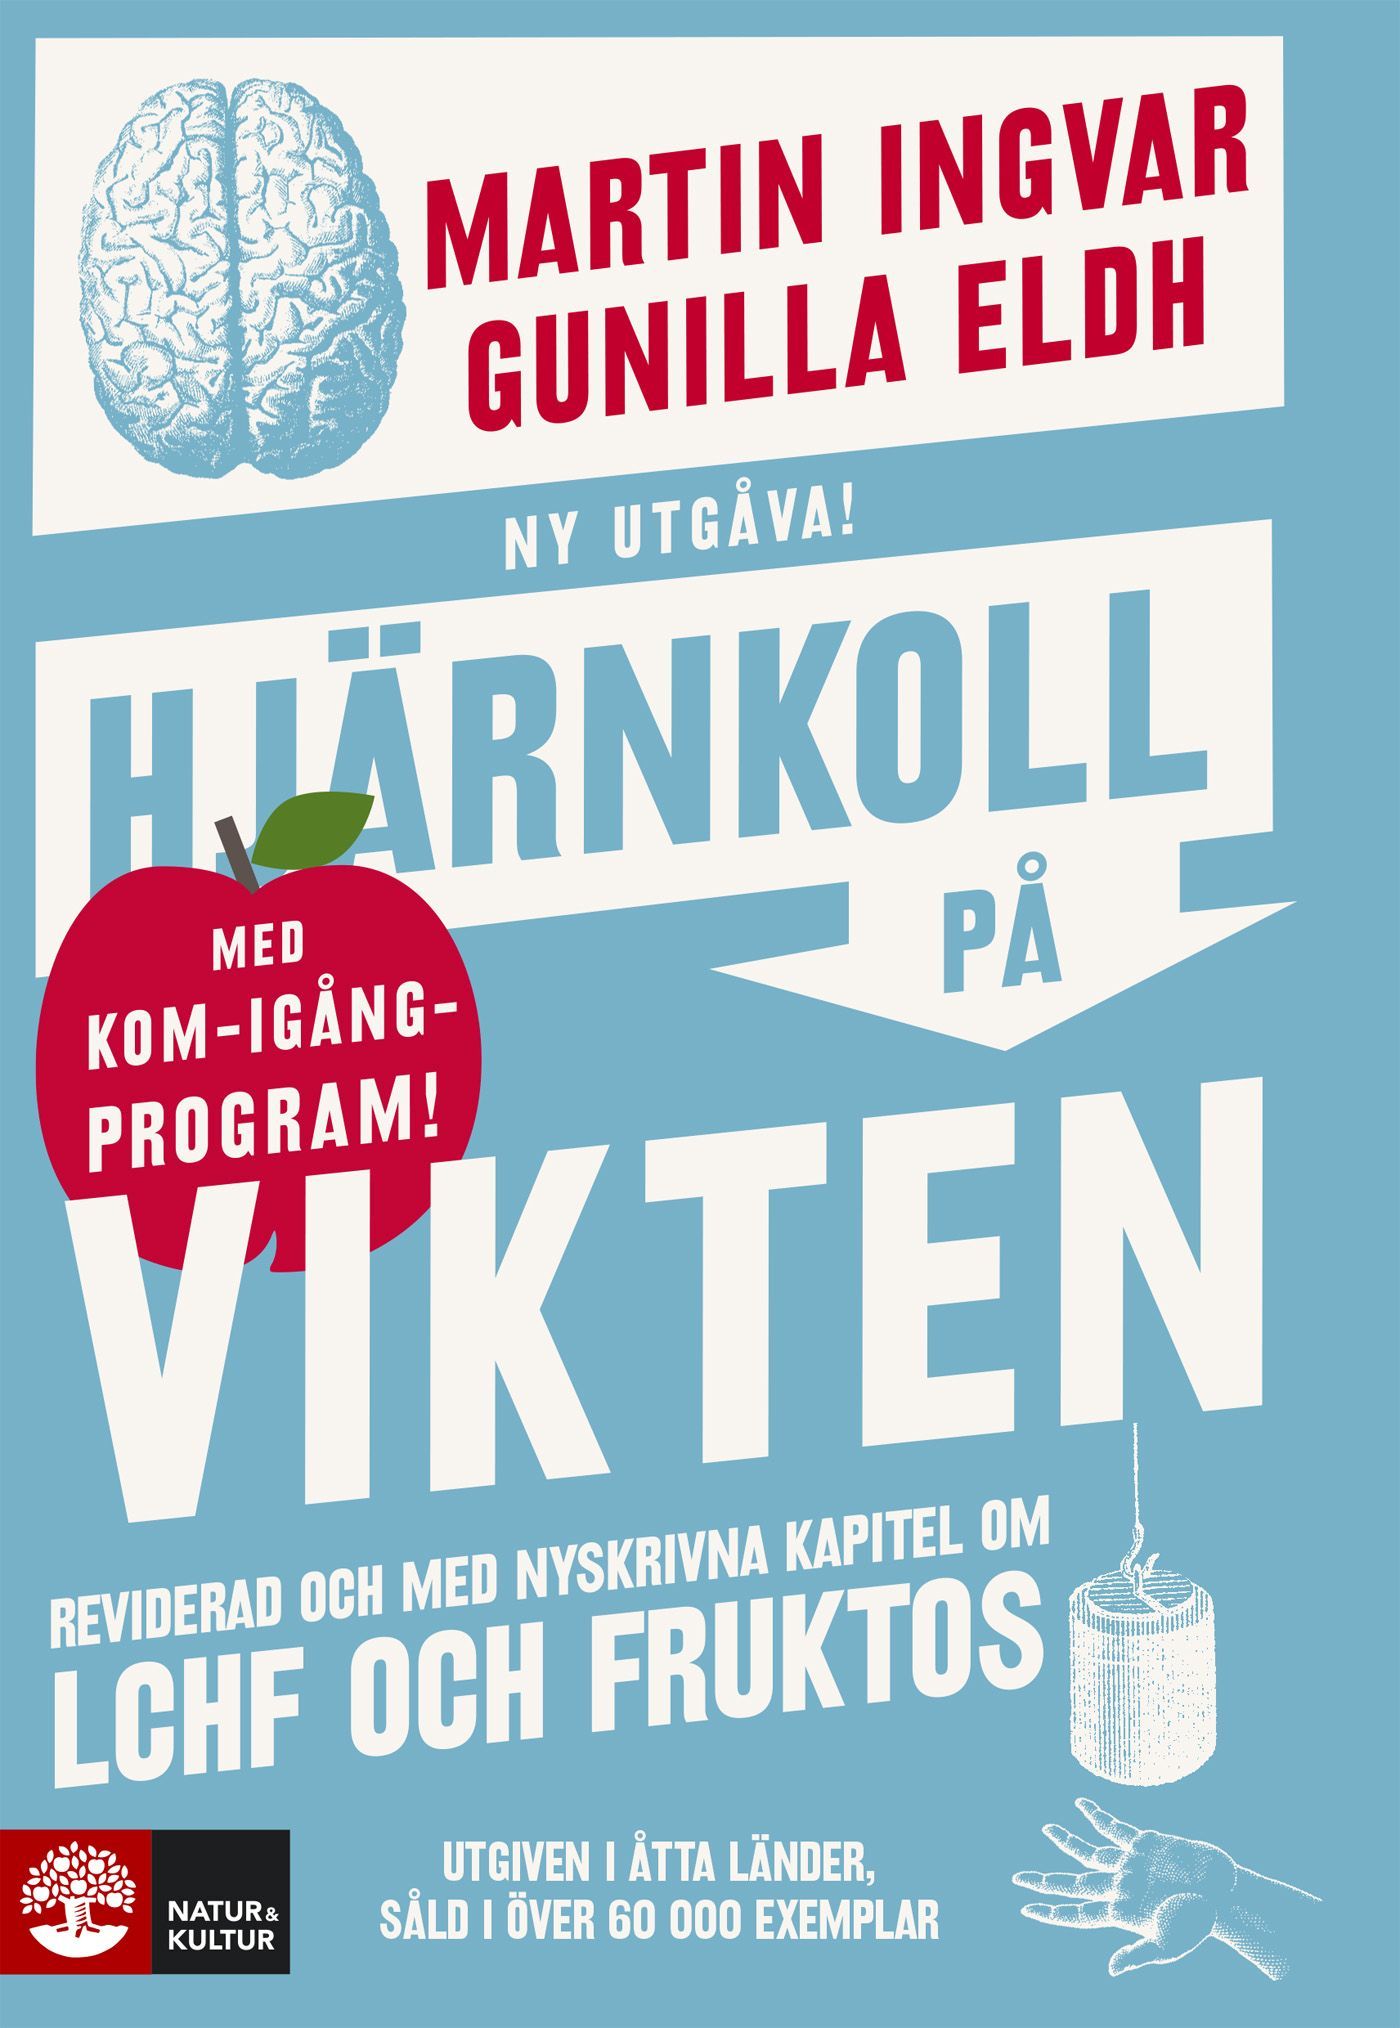 Hjärnkoll på vikten, e-bok av Gunilla Eldh, Martin Ingvar